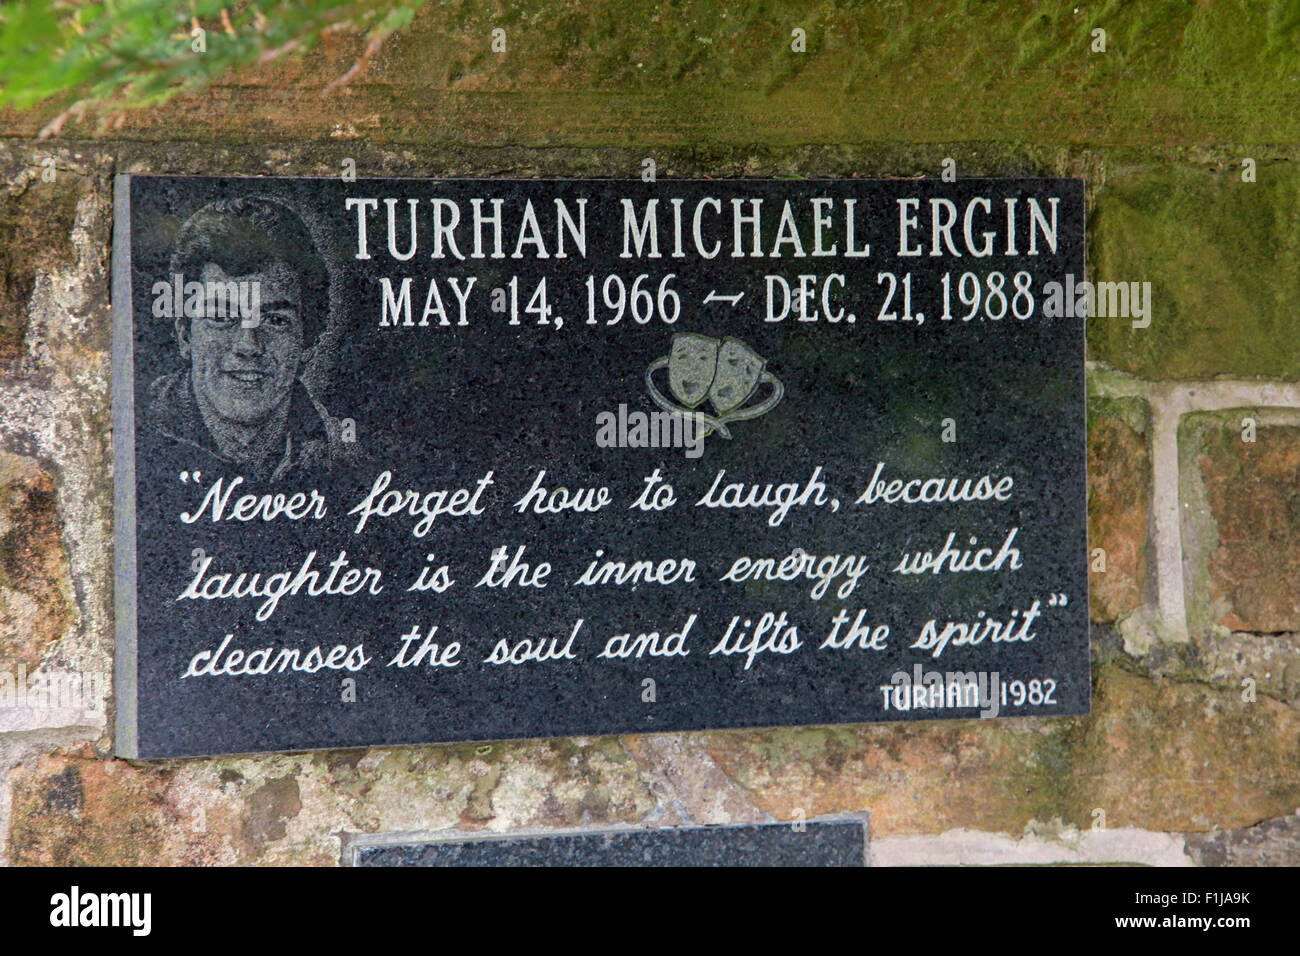 Lockerbie PanAm103 In Rememberance Memorial Turhan Michael Ergin,Scotland Stock Photo